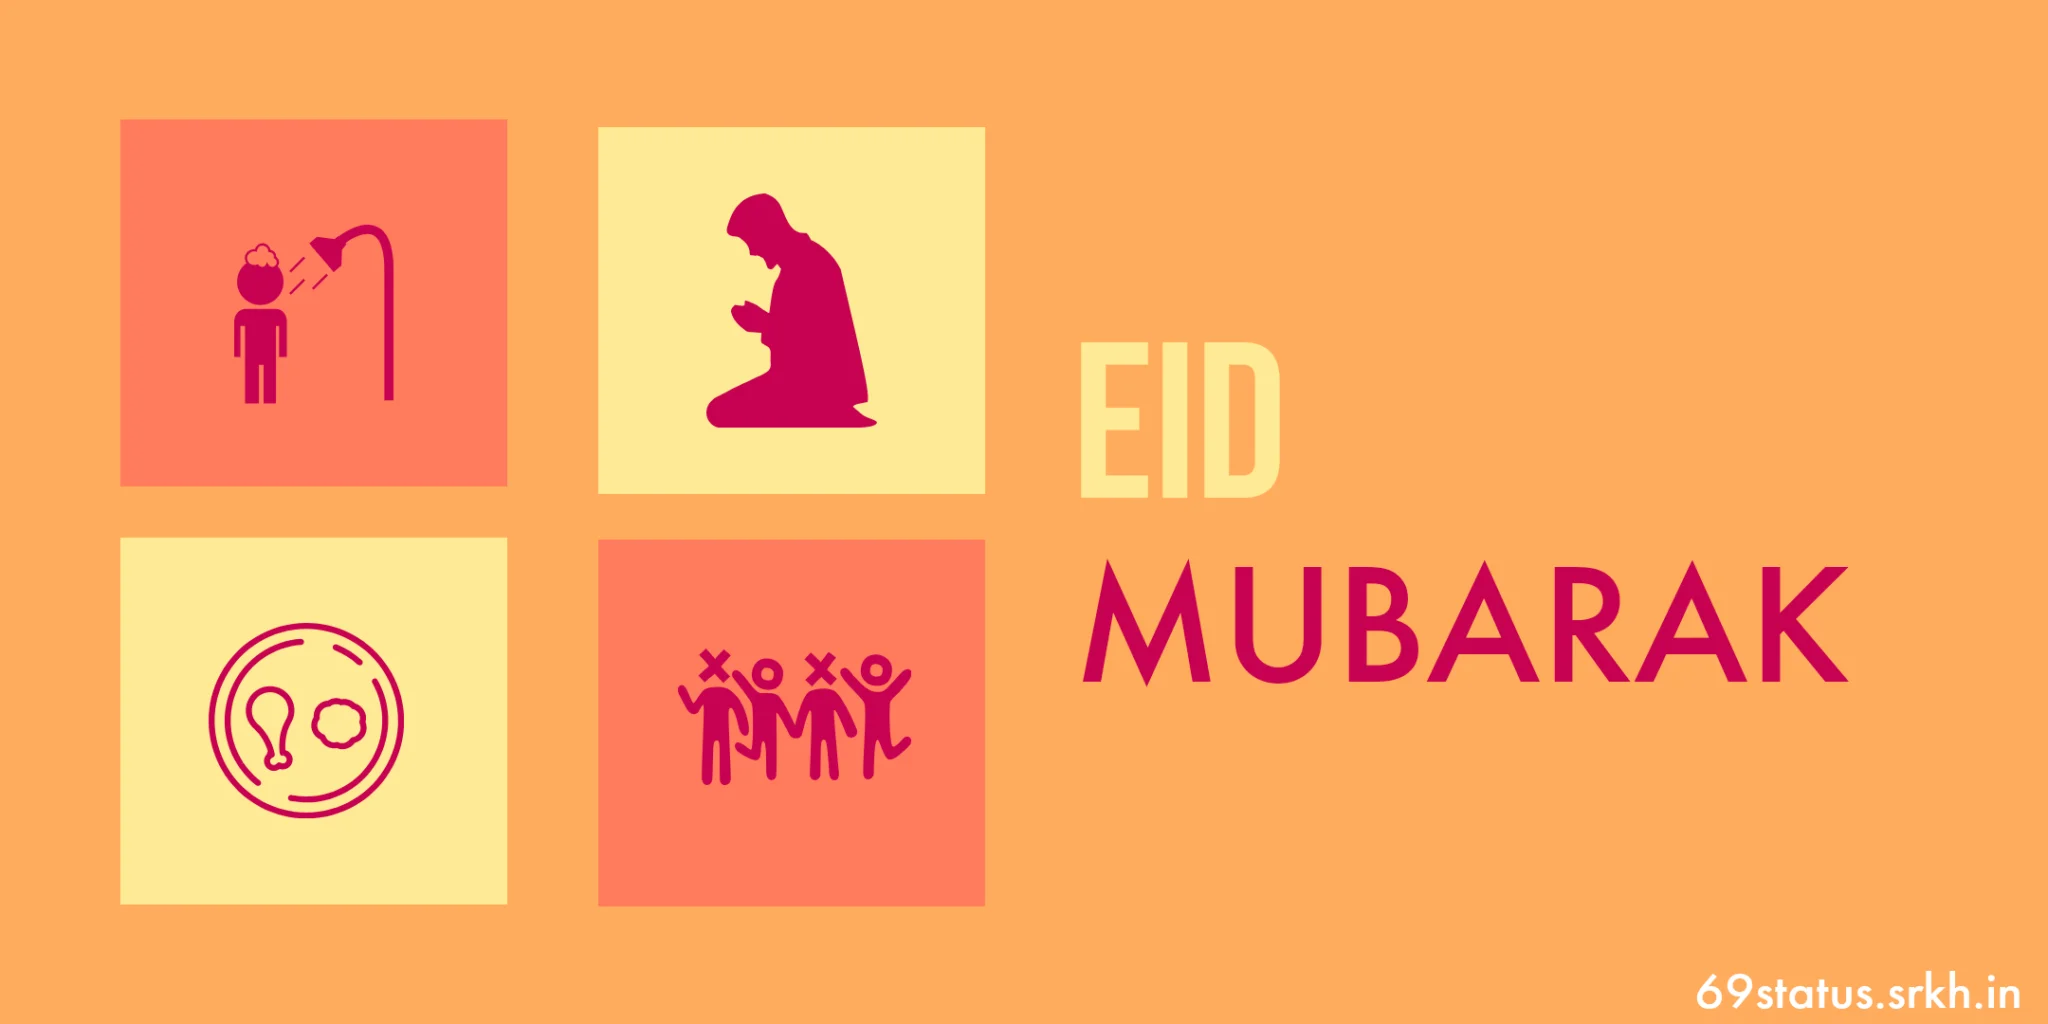 Eid Mubarak Image HD